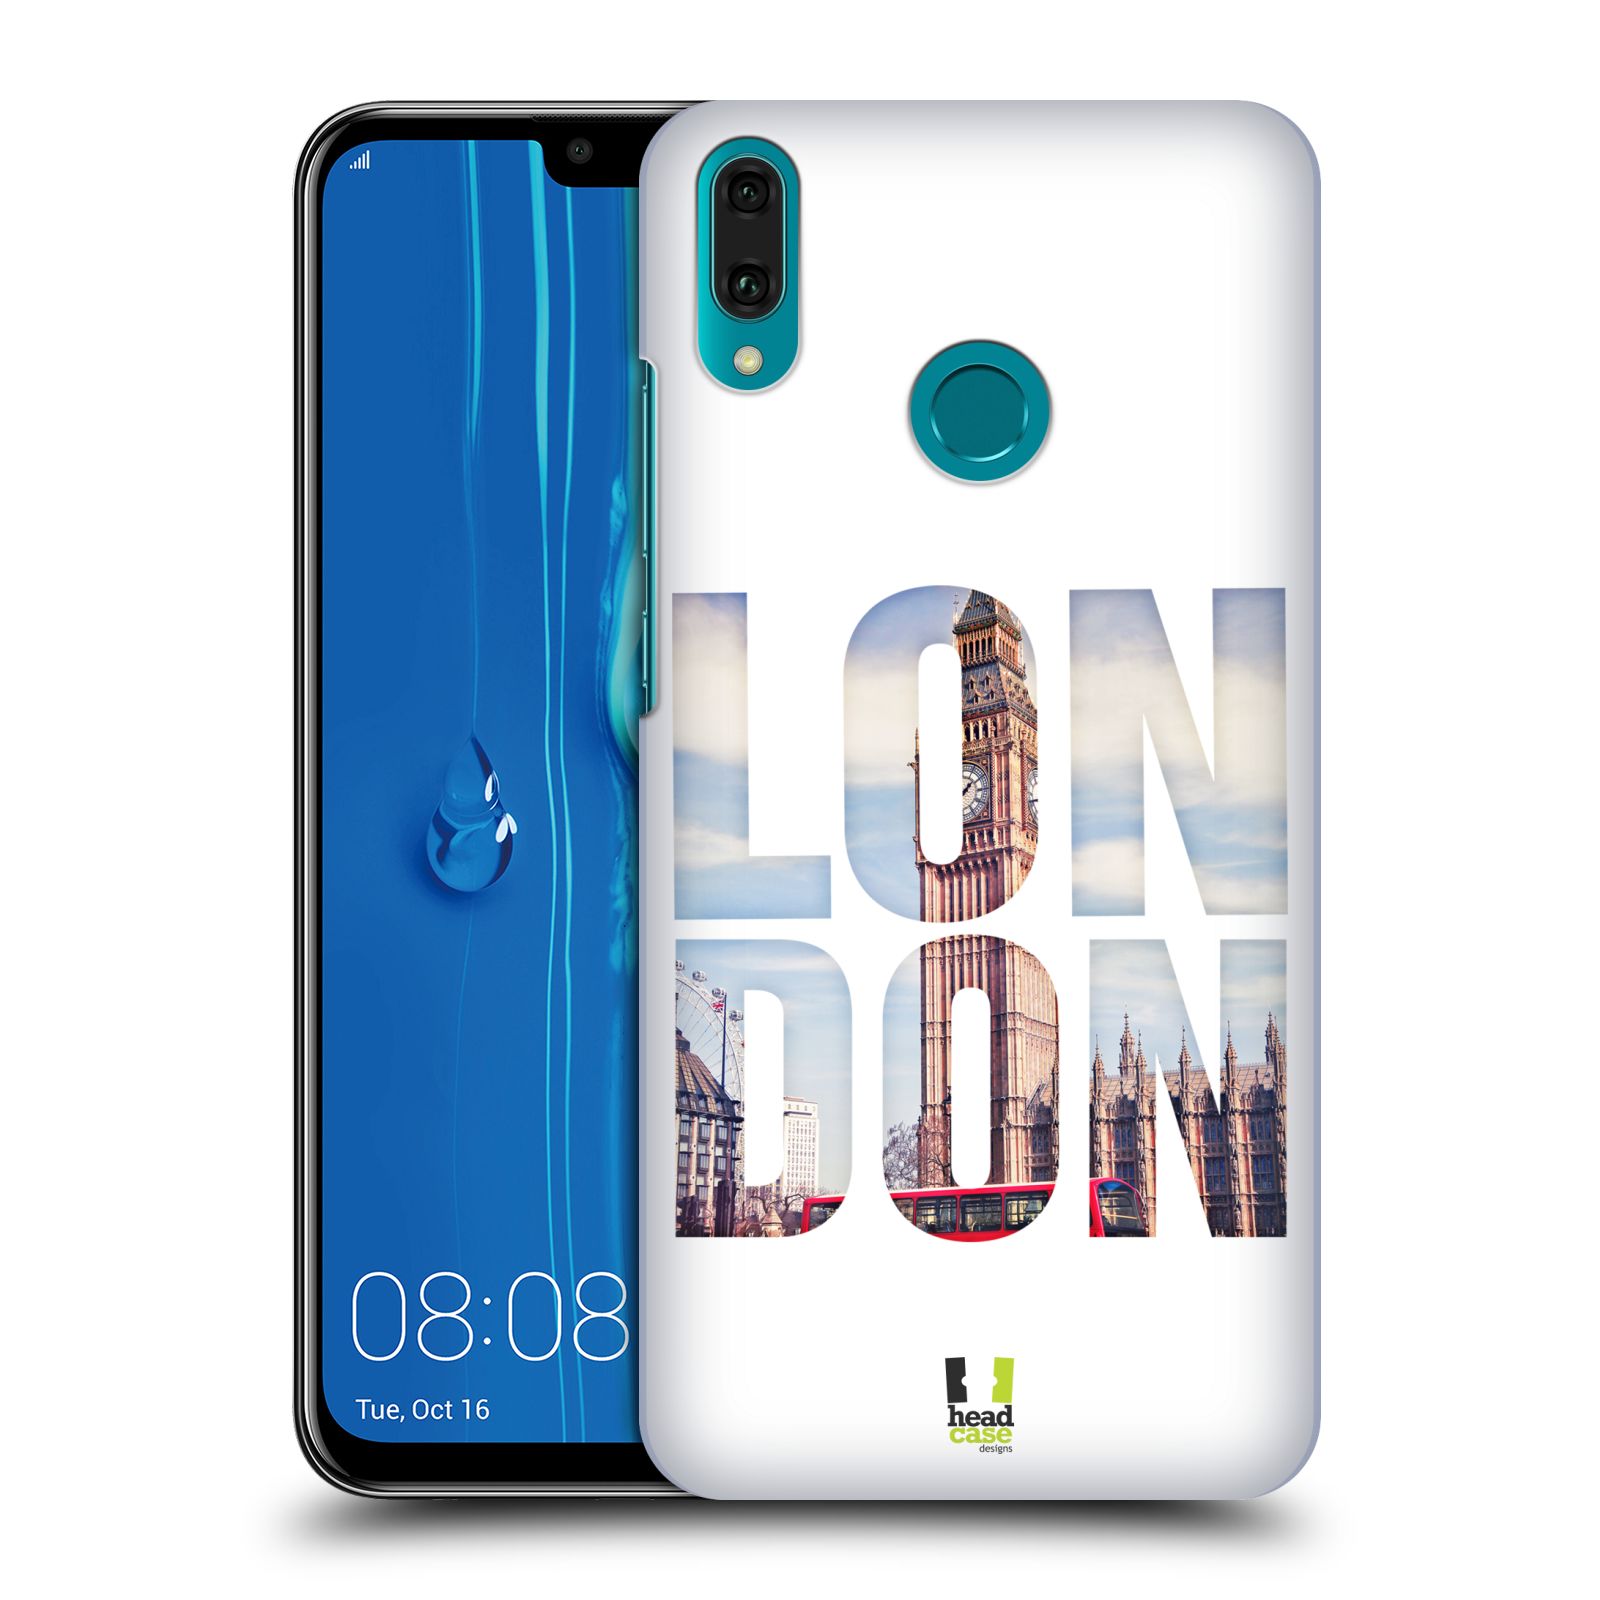 Pouzdro na mobil Huawei Y9 2019 - HEAD CASE - vzor Města foto a nadpis ANGLIE, LONDÝN, BIG BEN